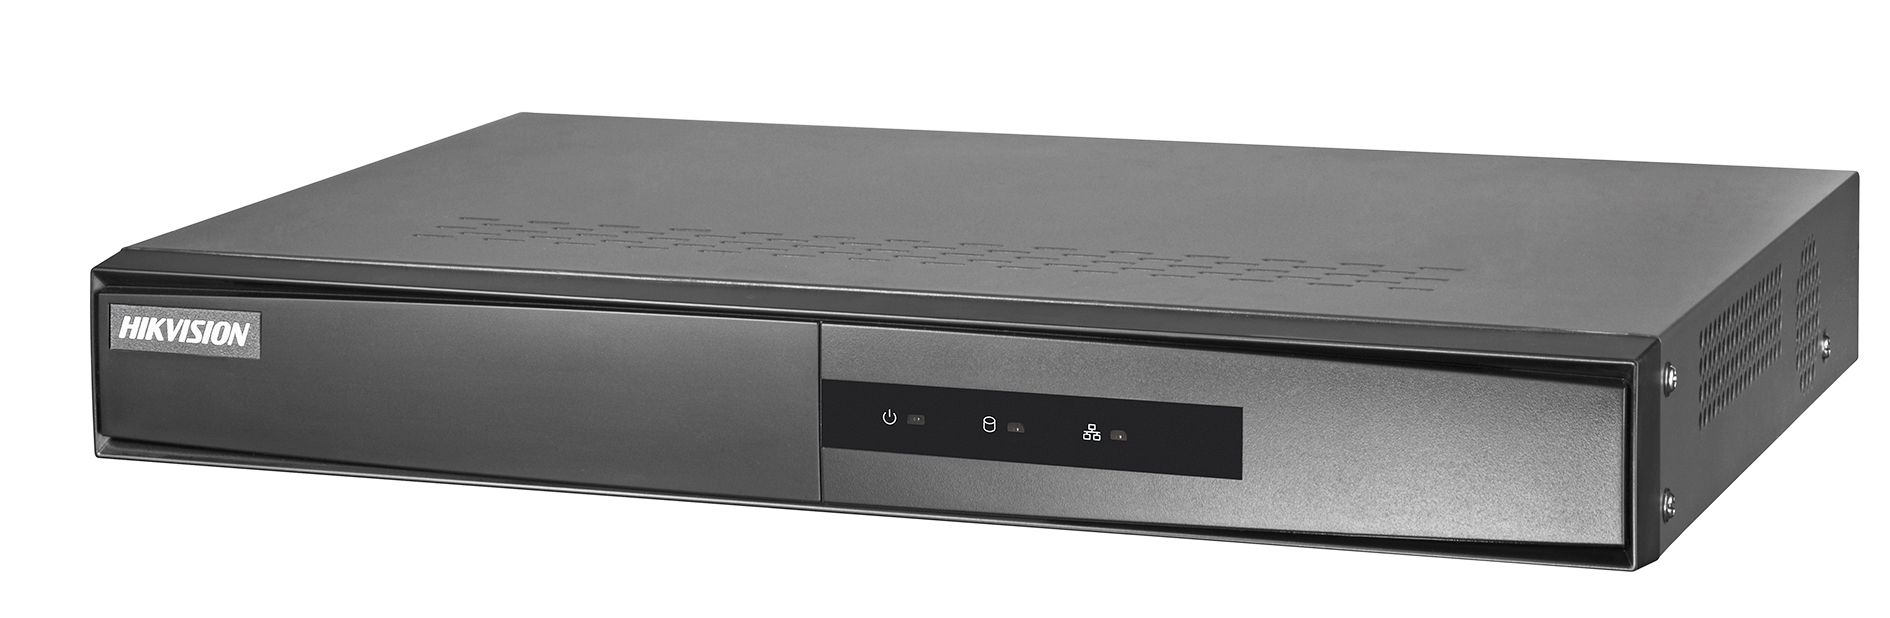 Hikvision DS-7104NI-Q1/M. 4-х канальный IP-видеорегистратор